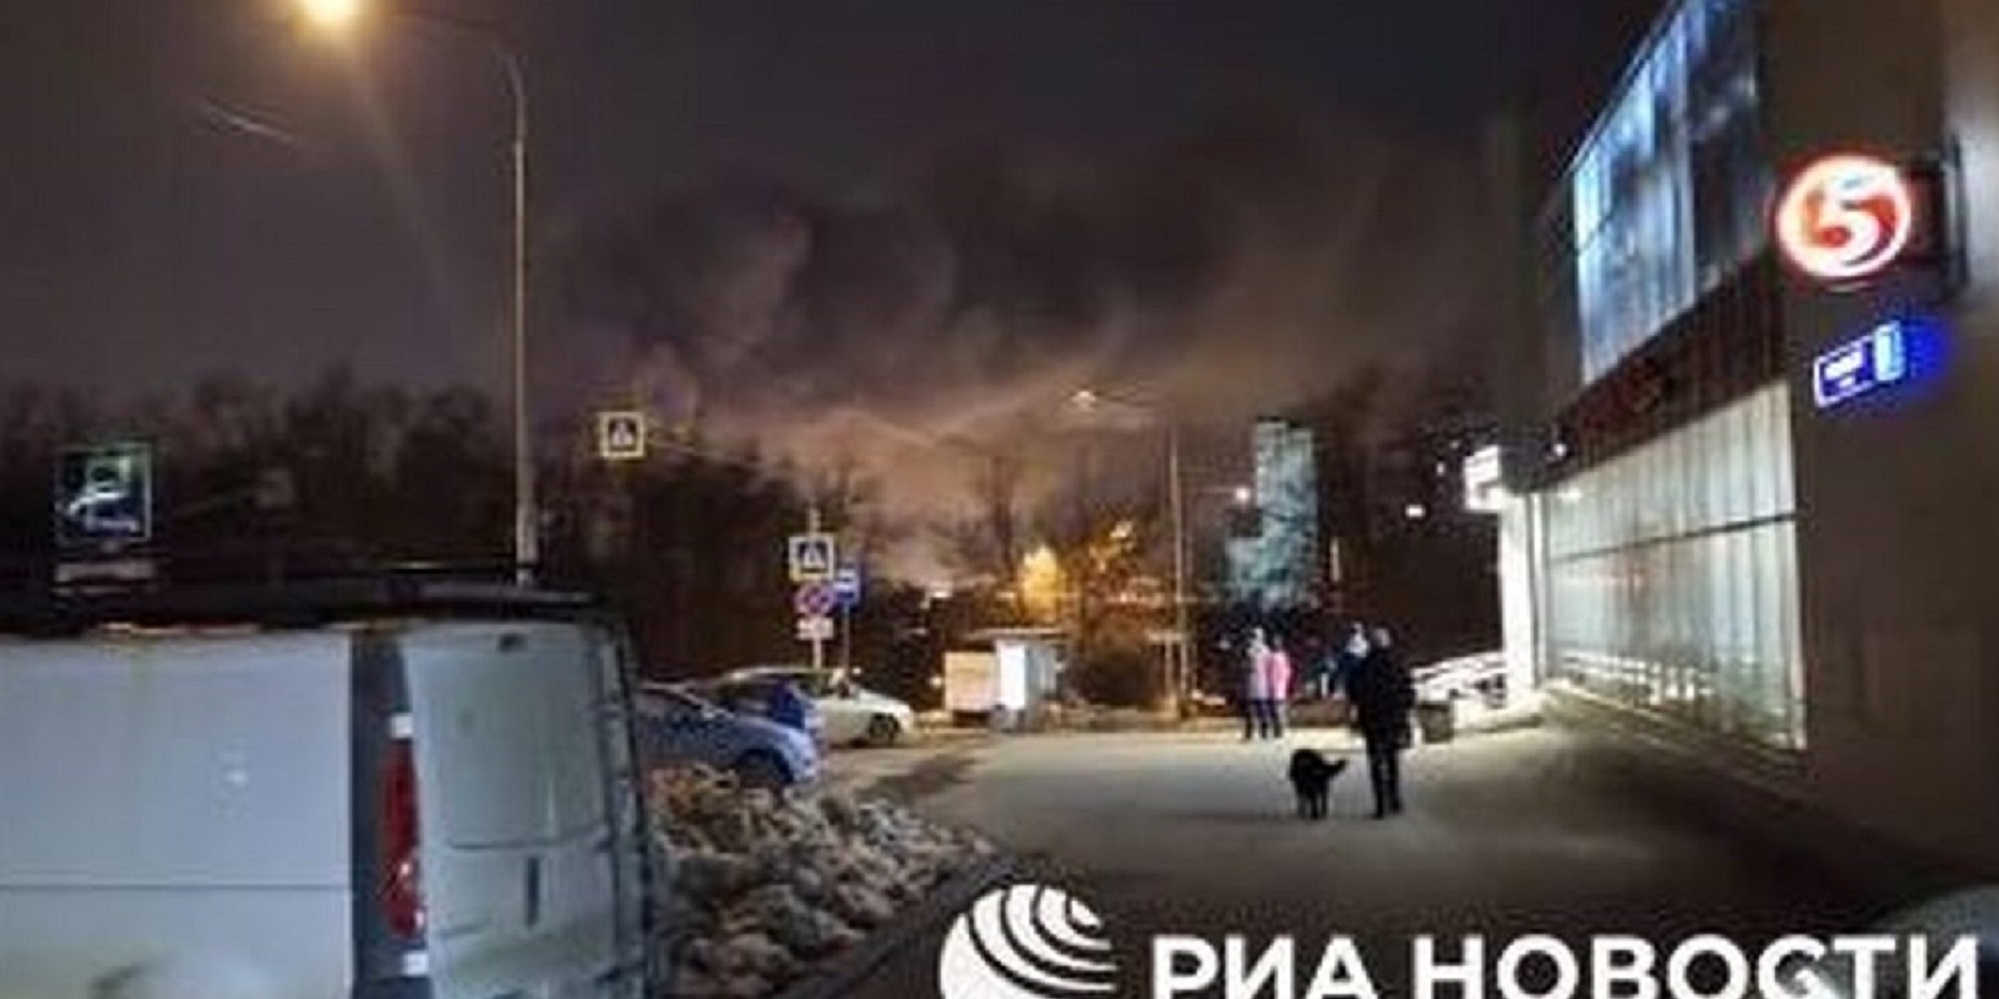 Μακελειό στη Μόσχα: Επίθεση με χειροβομβίδα σε συναυλιακό χώρο – Τουλάχιστον 12 νεκροί και 35 τραυματίες! (βίντεο)